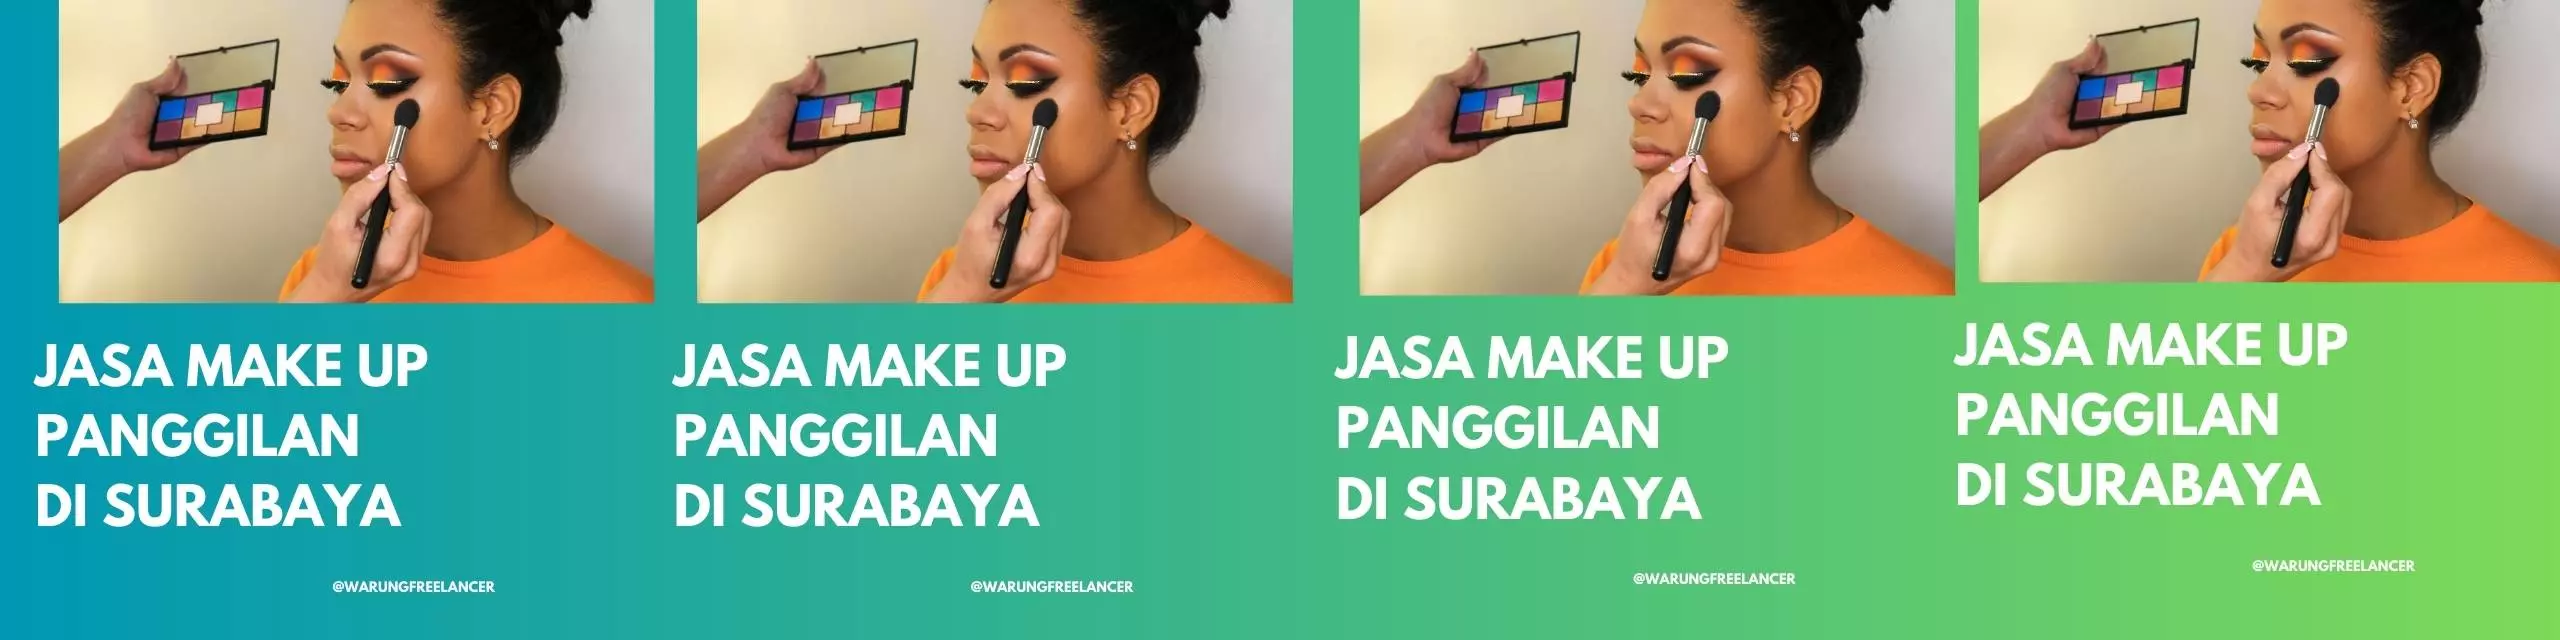 Jasa Make Up Panggilan di Surabaya